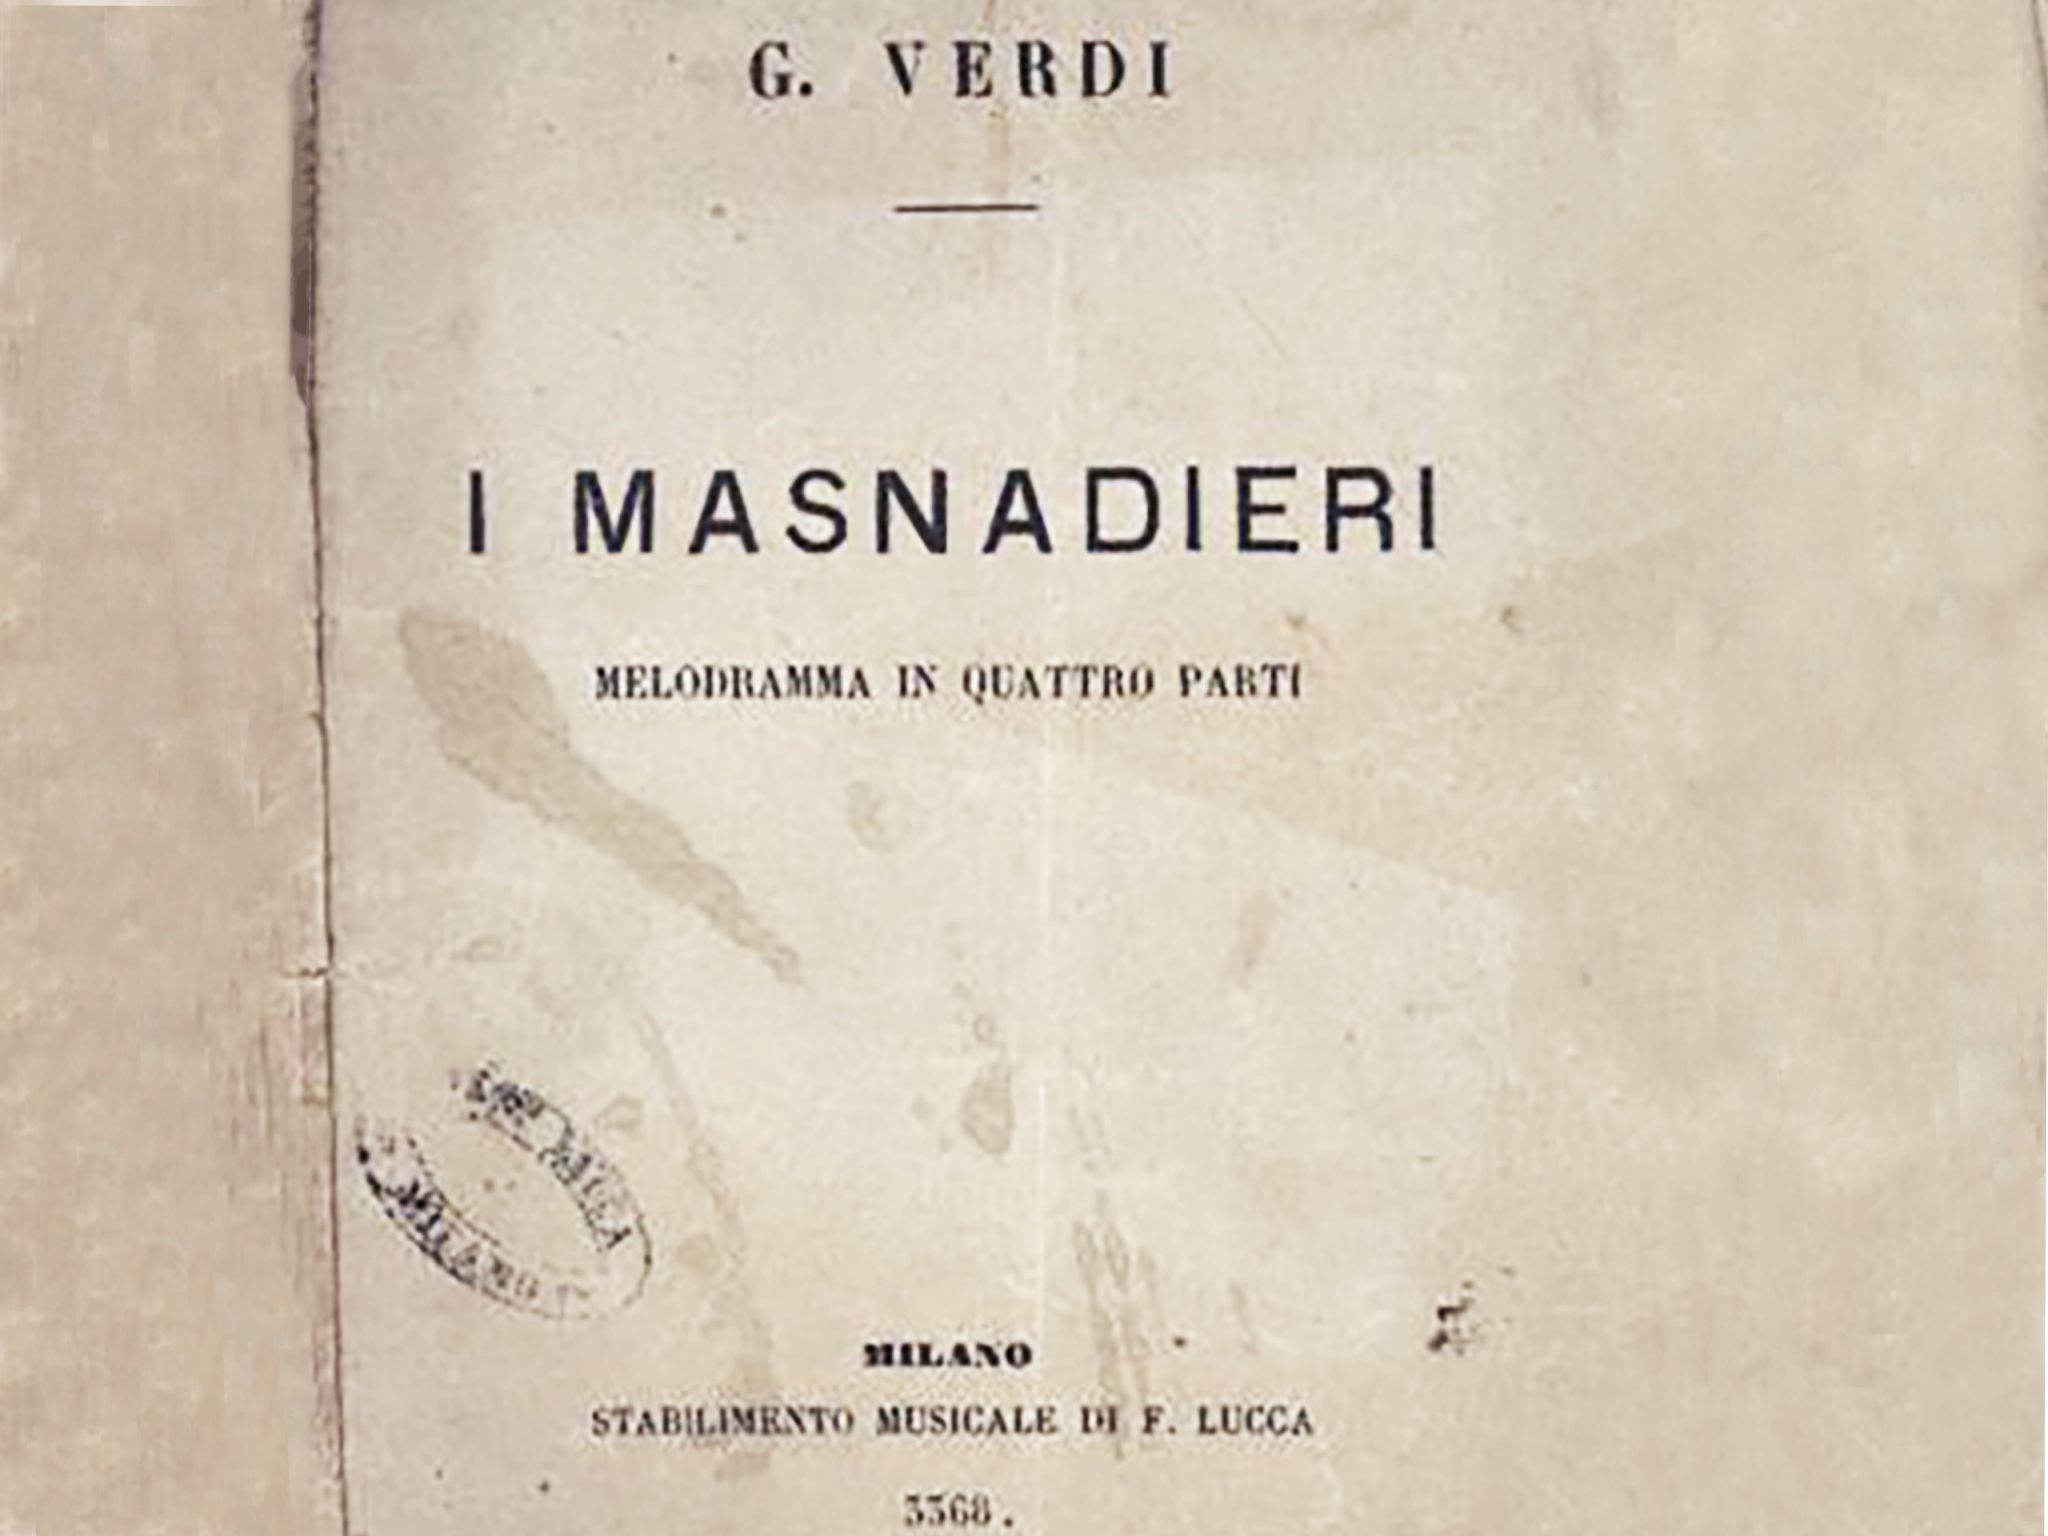 Libretto del melodramma in quattro parti “I Masnadieri”.